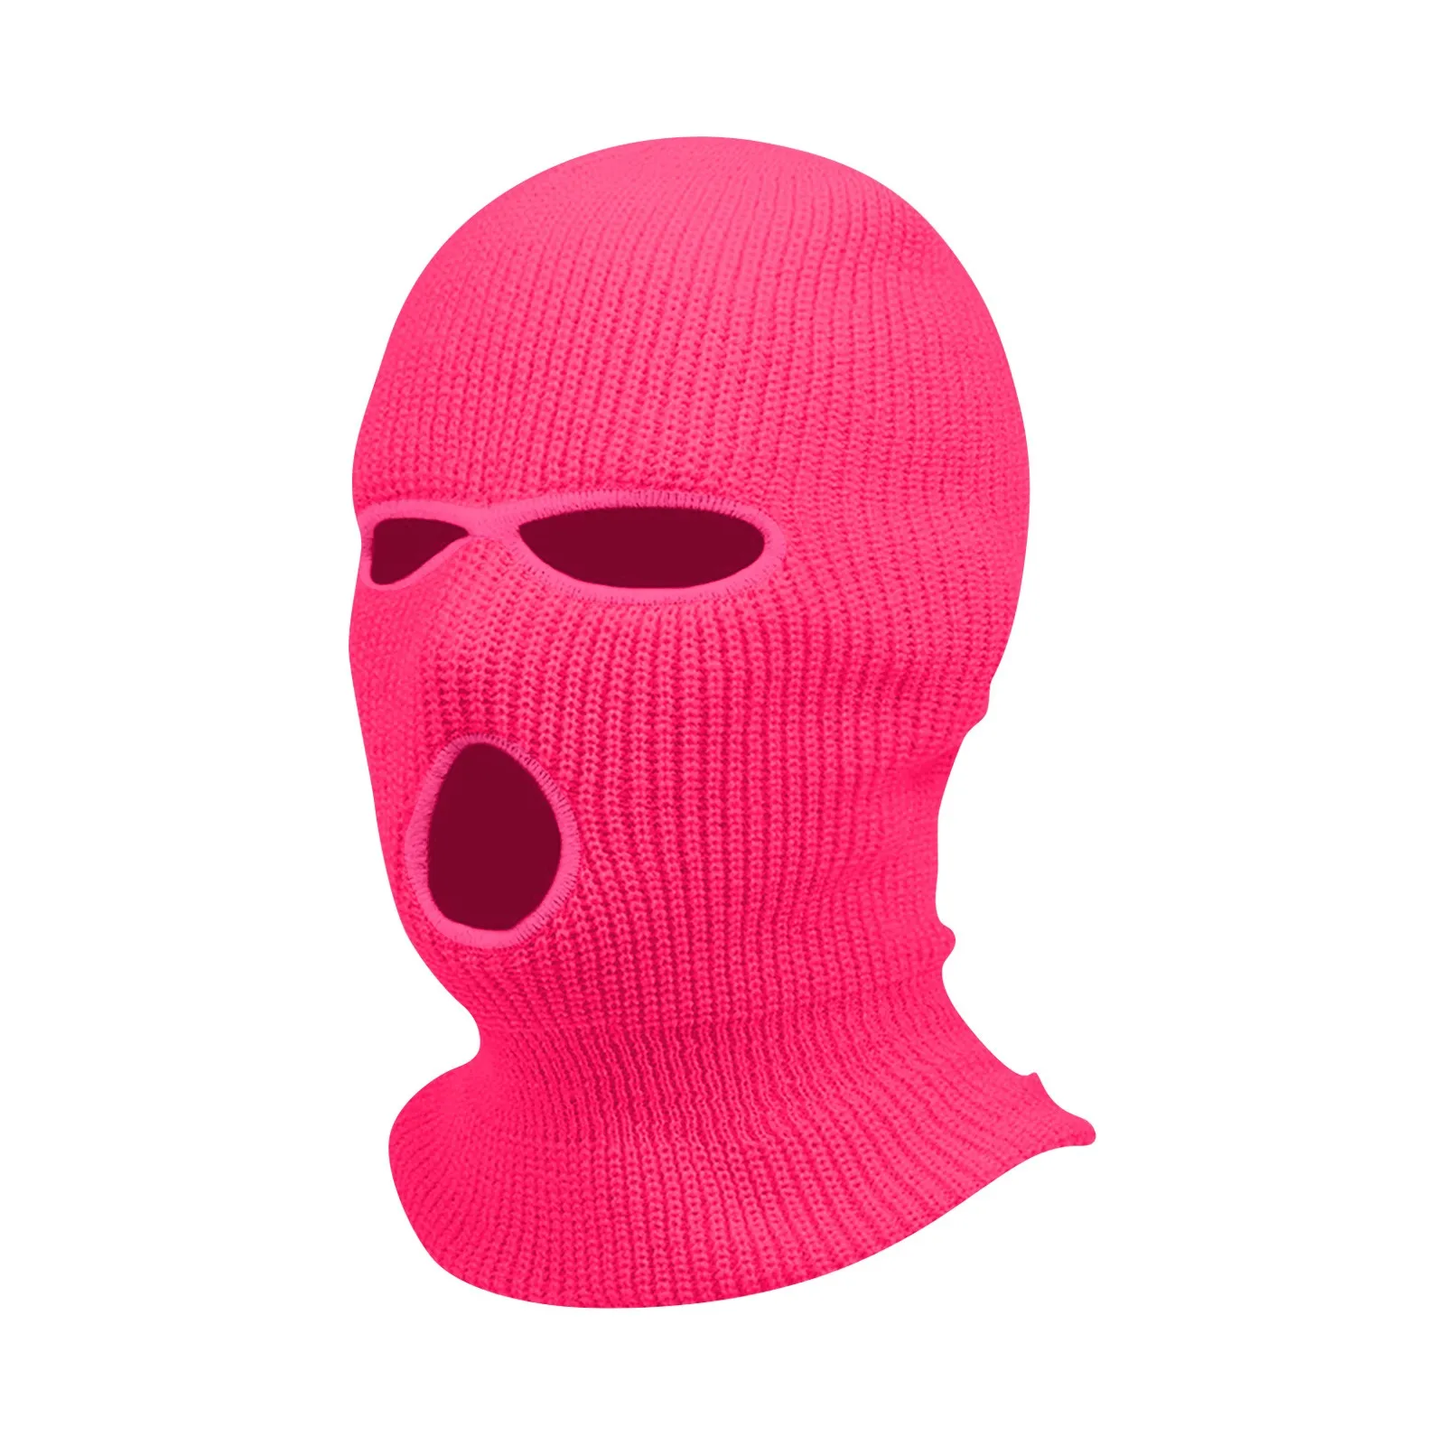 Hyper Pink Skimask Balaclava